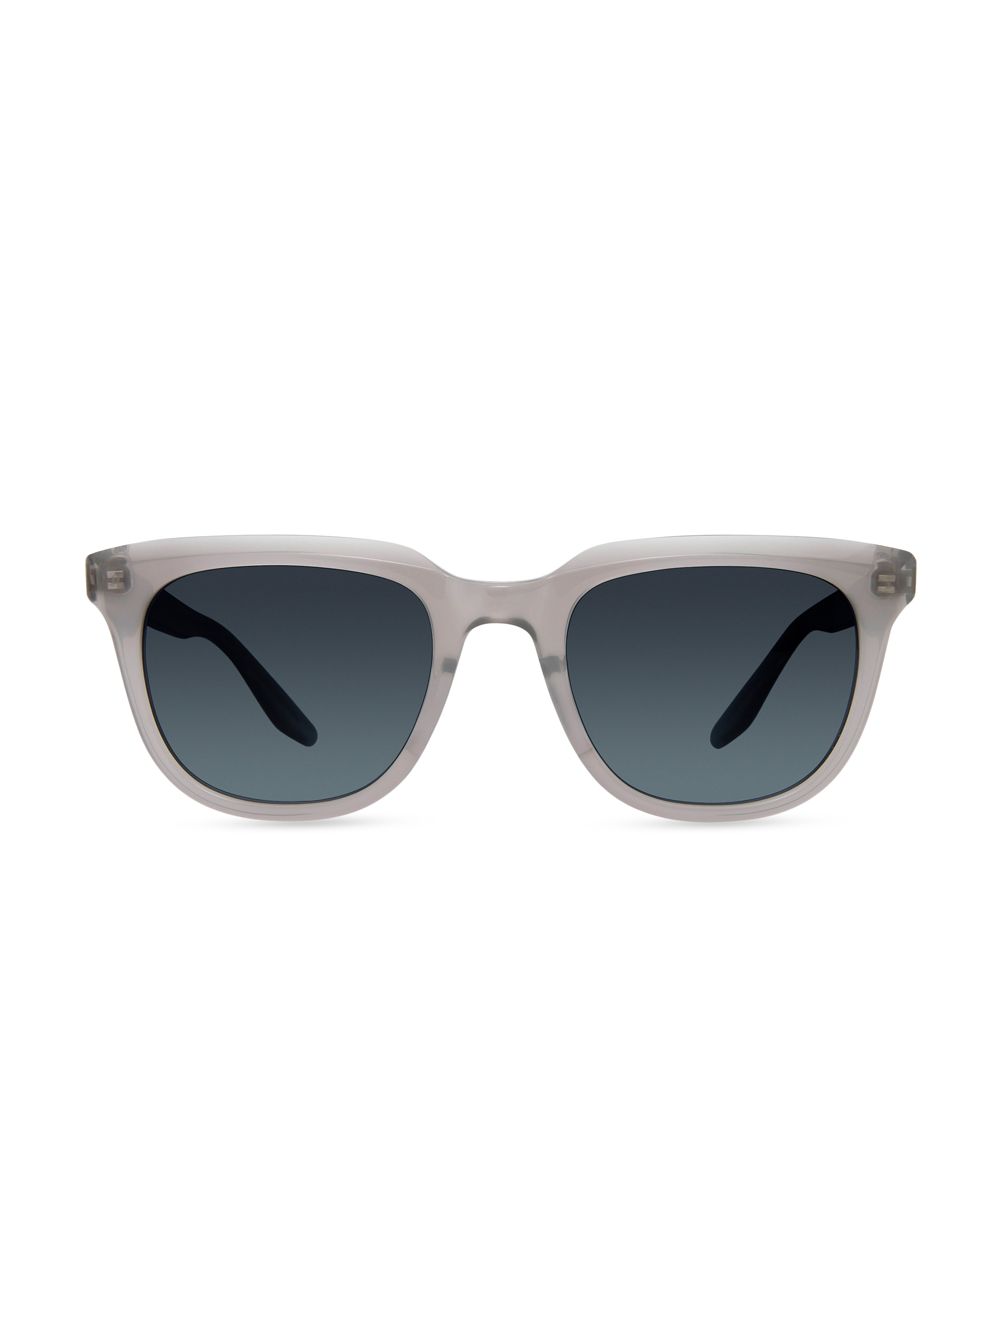 Прямоугольные солнцезащитные очки Bogle 55 мм Barton Perreira, серый солнцезащитные очки barton perreira x teddy vonranson 55mm barton perreira